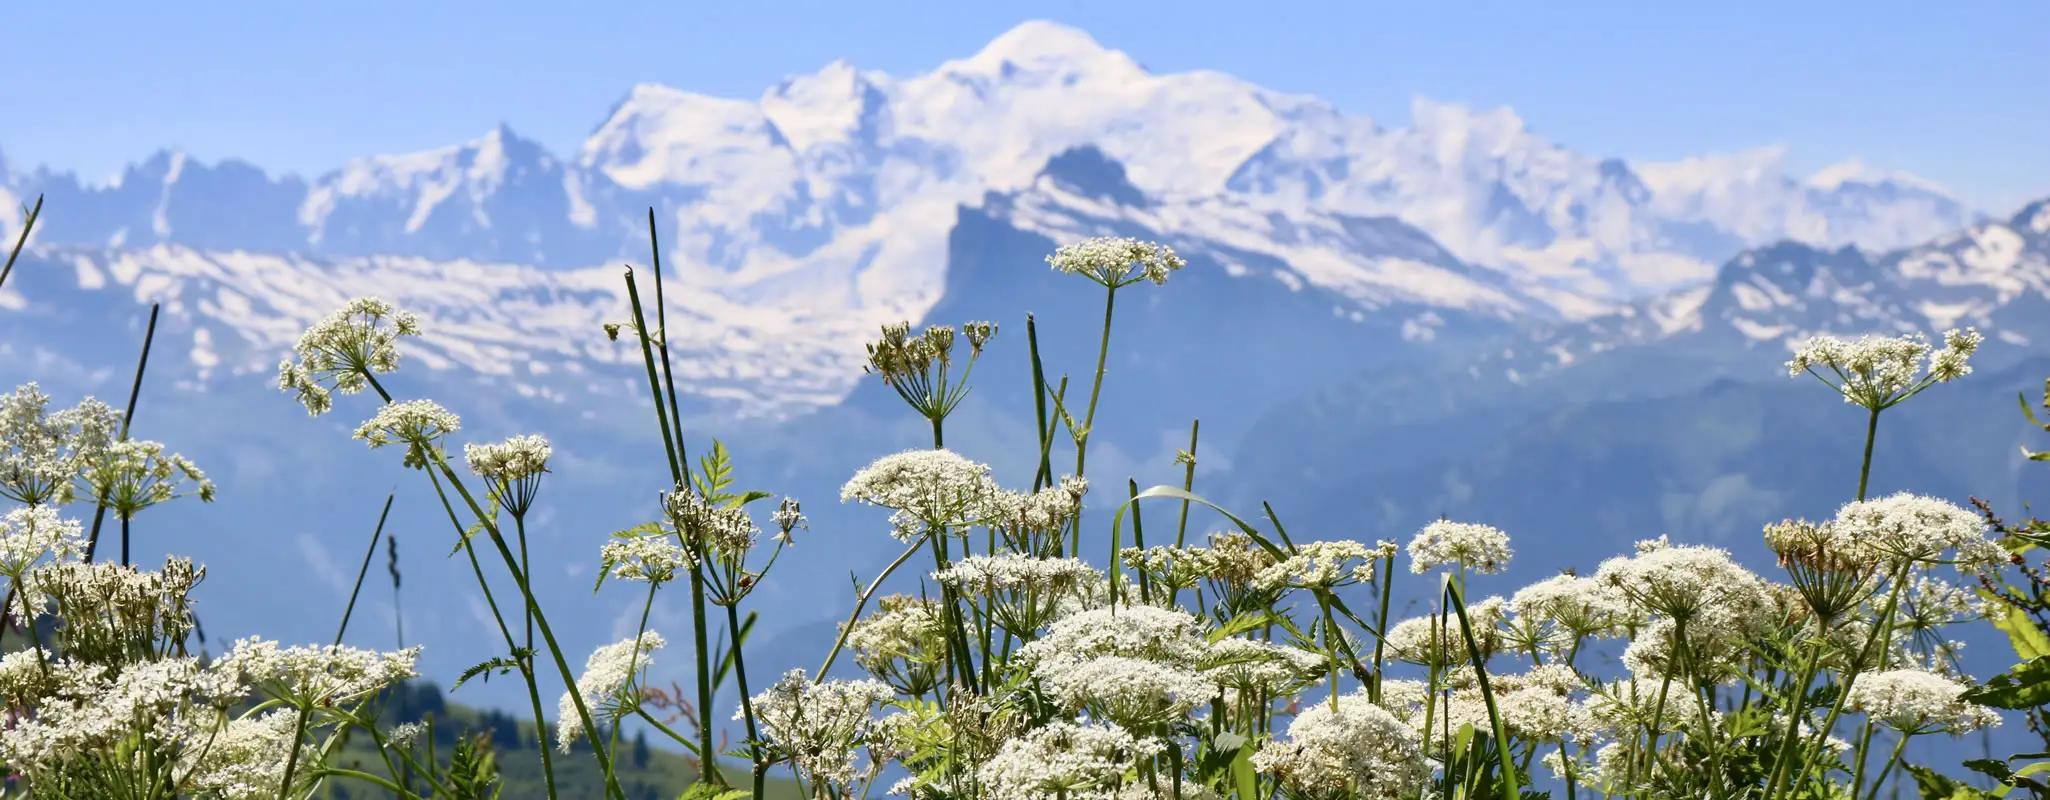 Woodlands Chalets - Mont Blanc landscape